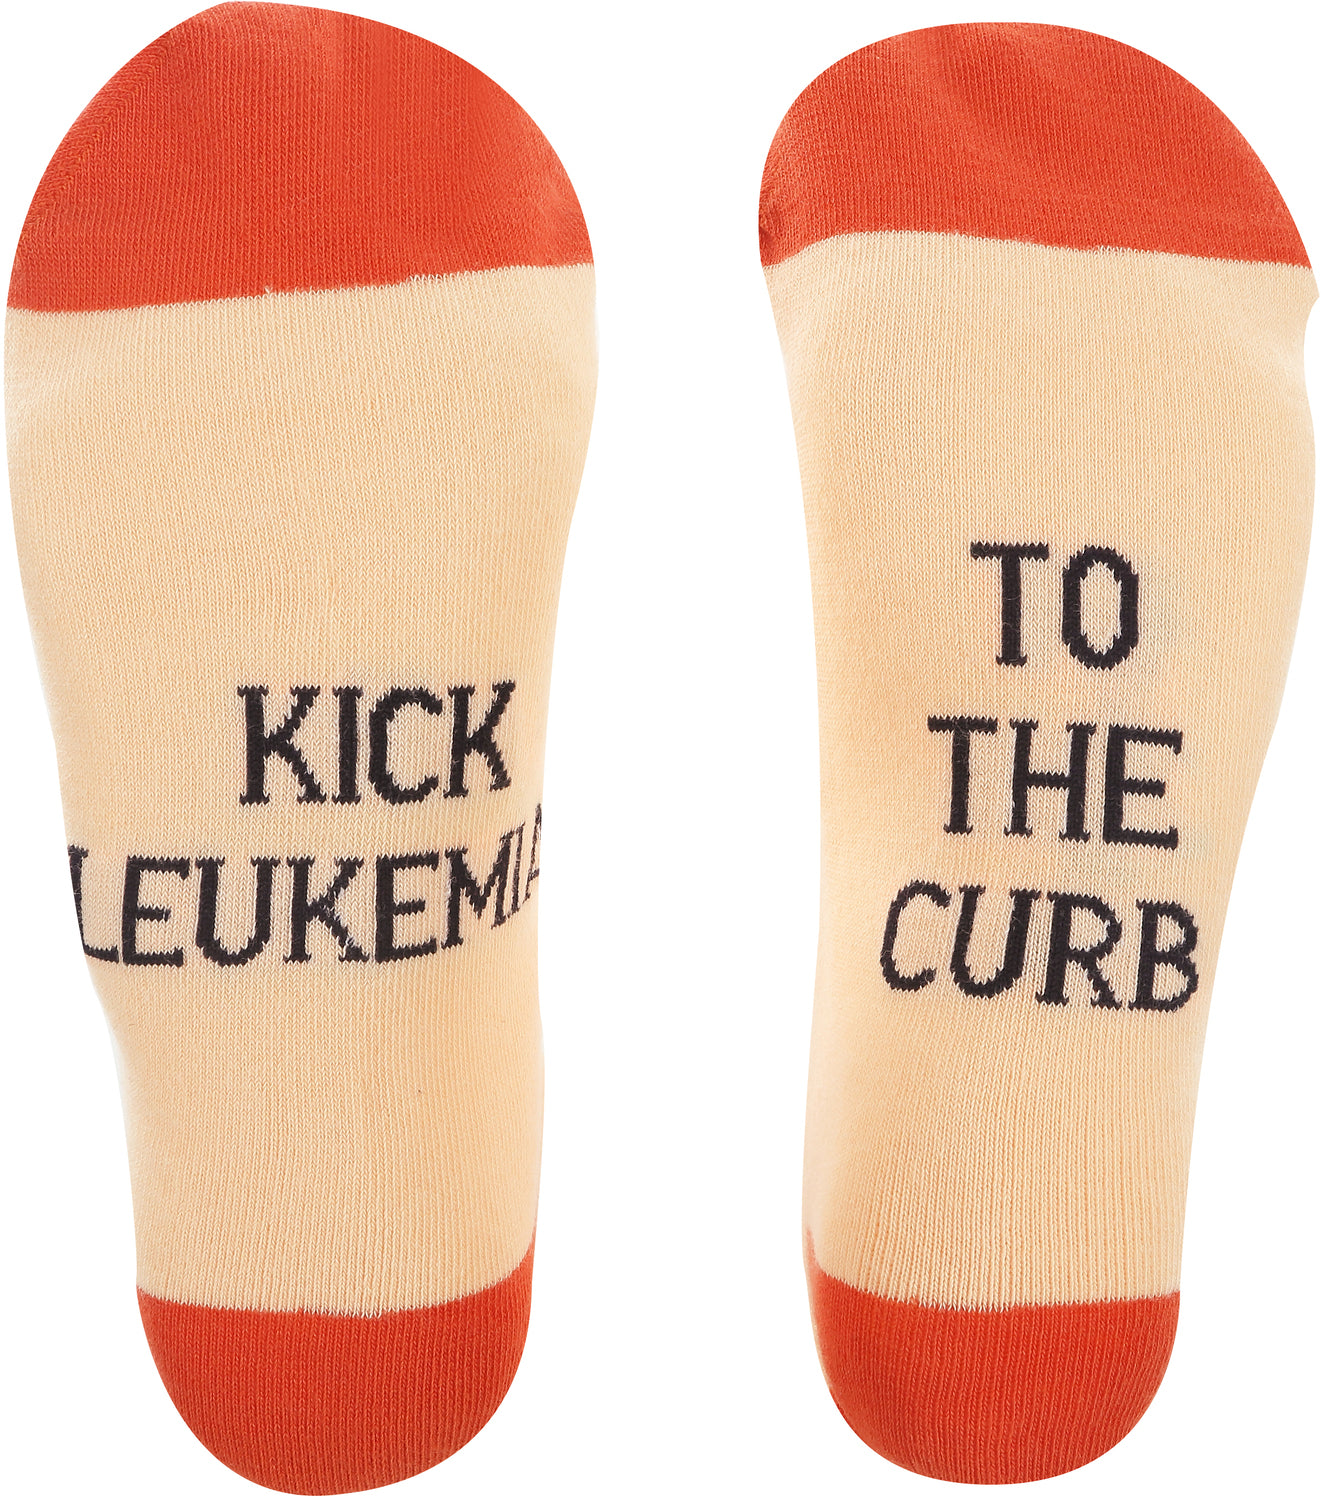 Leukemia - M/L Unisex Sock